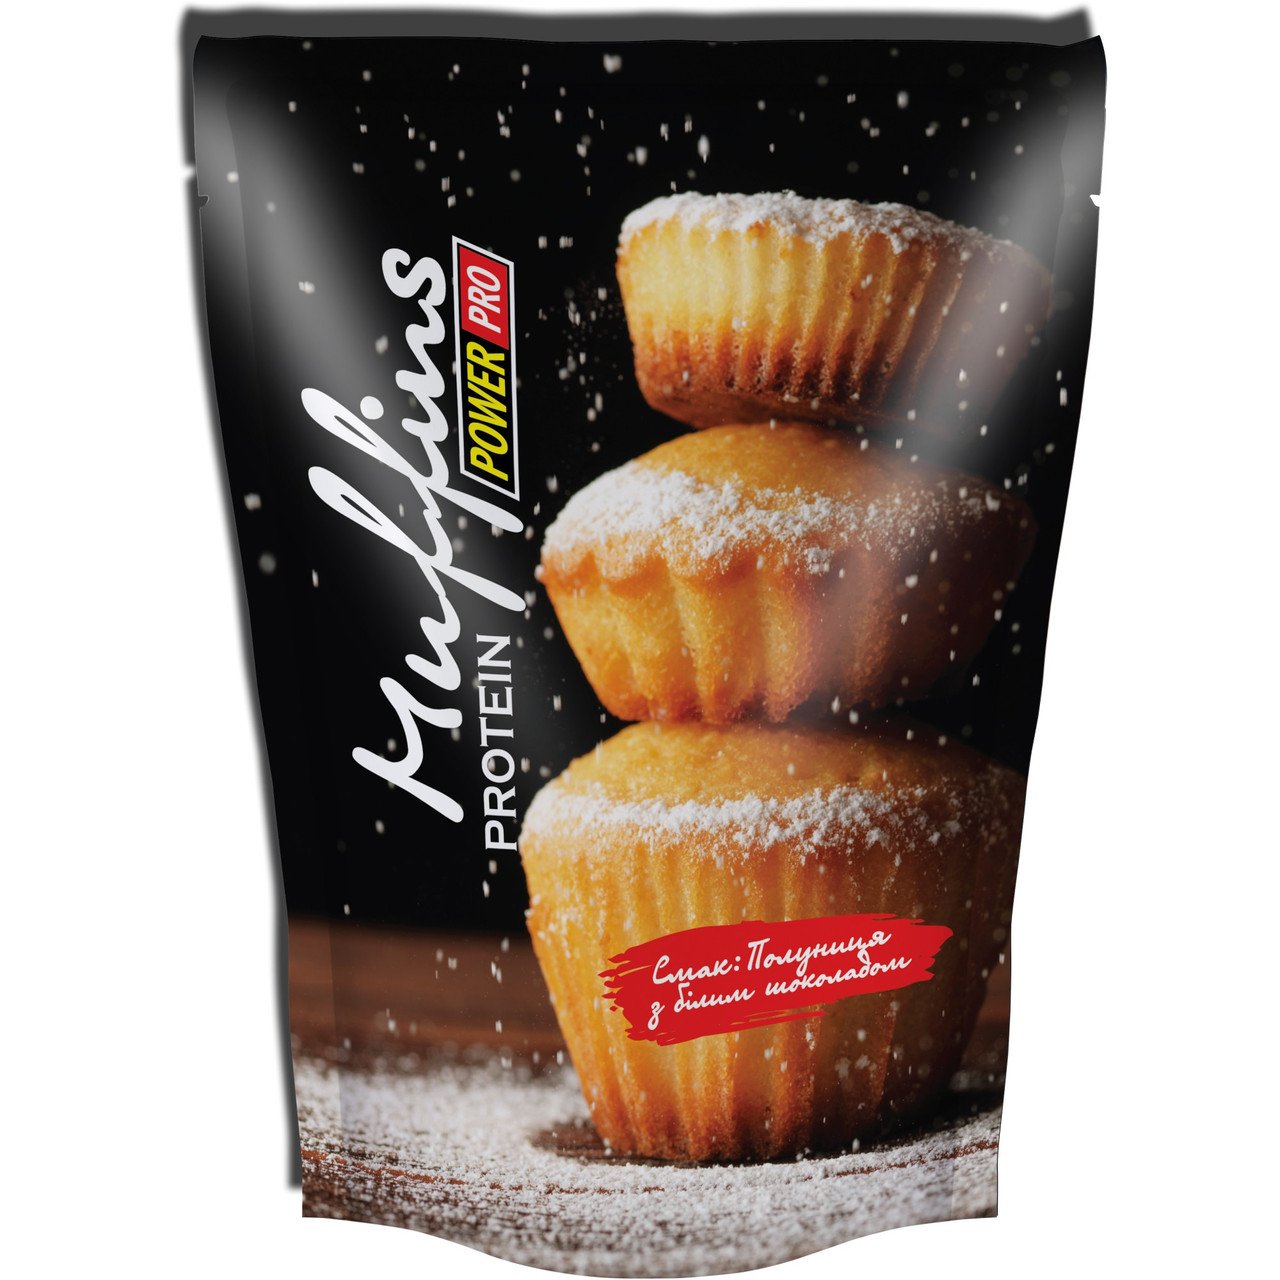 Muffins Protein Power Pro 600 g,  мл, Power Pro. Заменитель питания. 